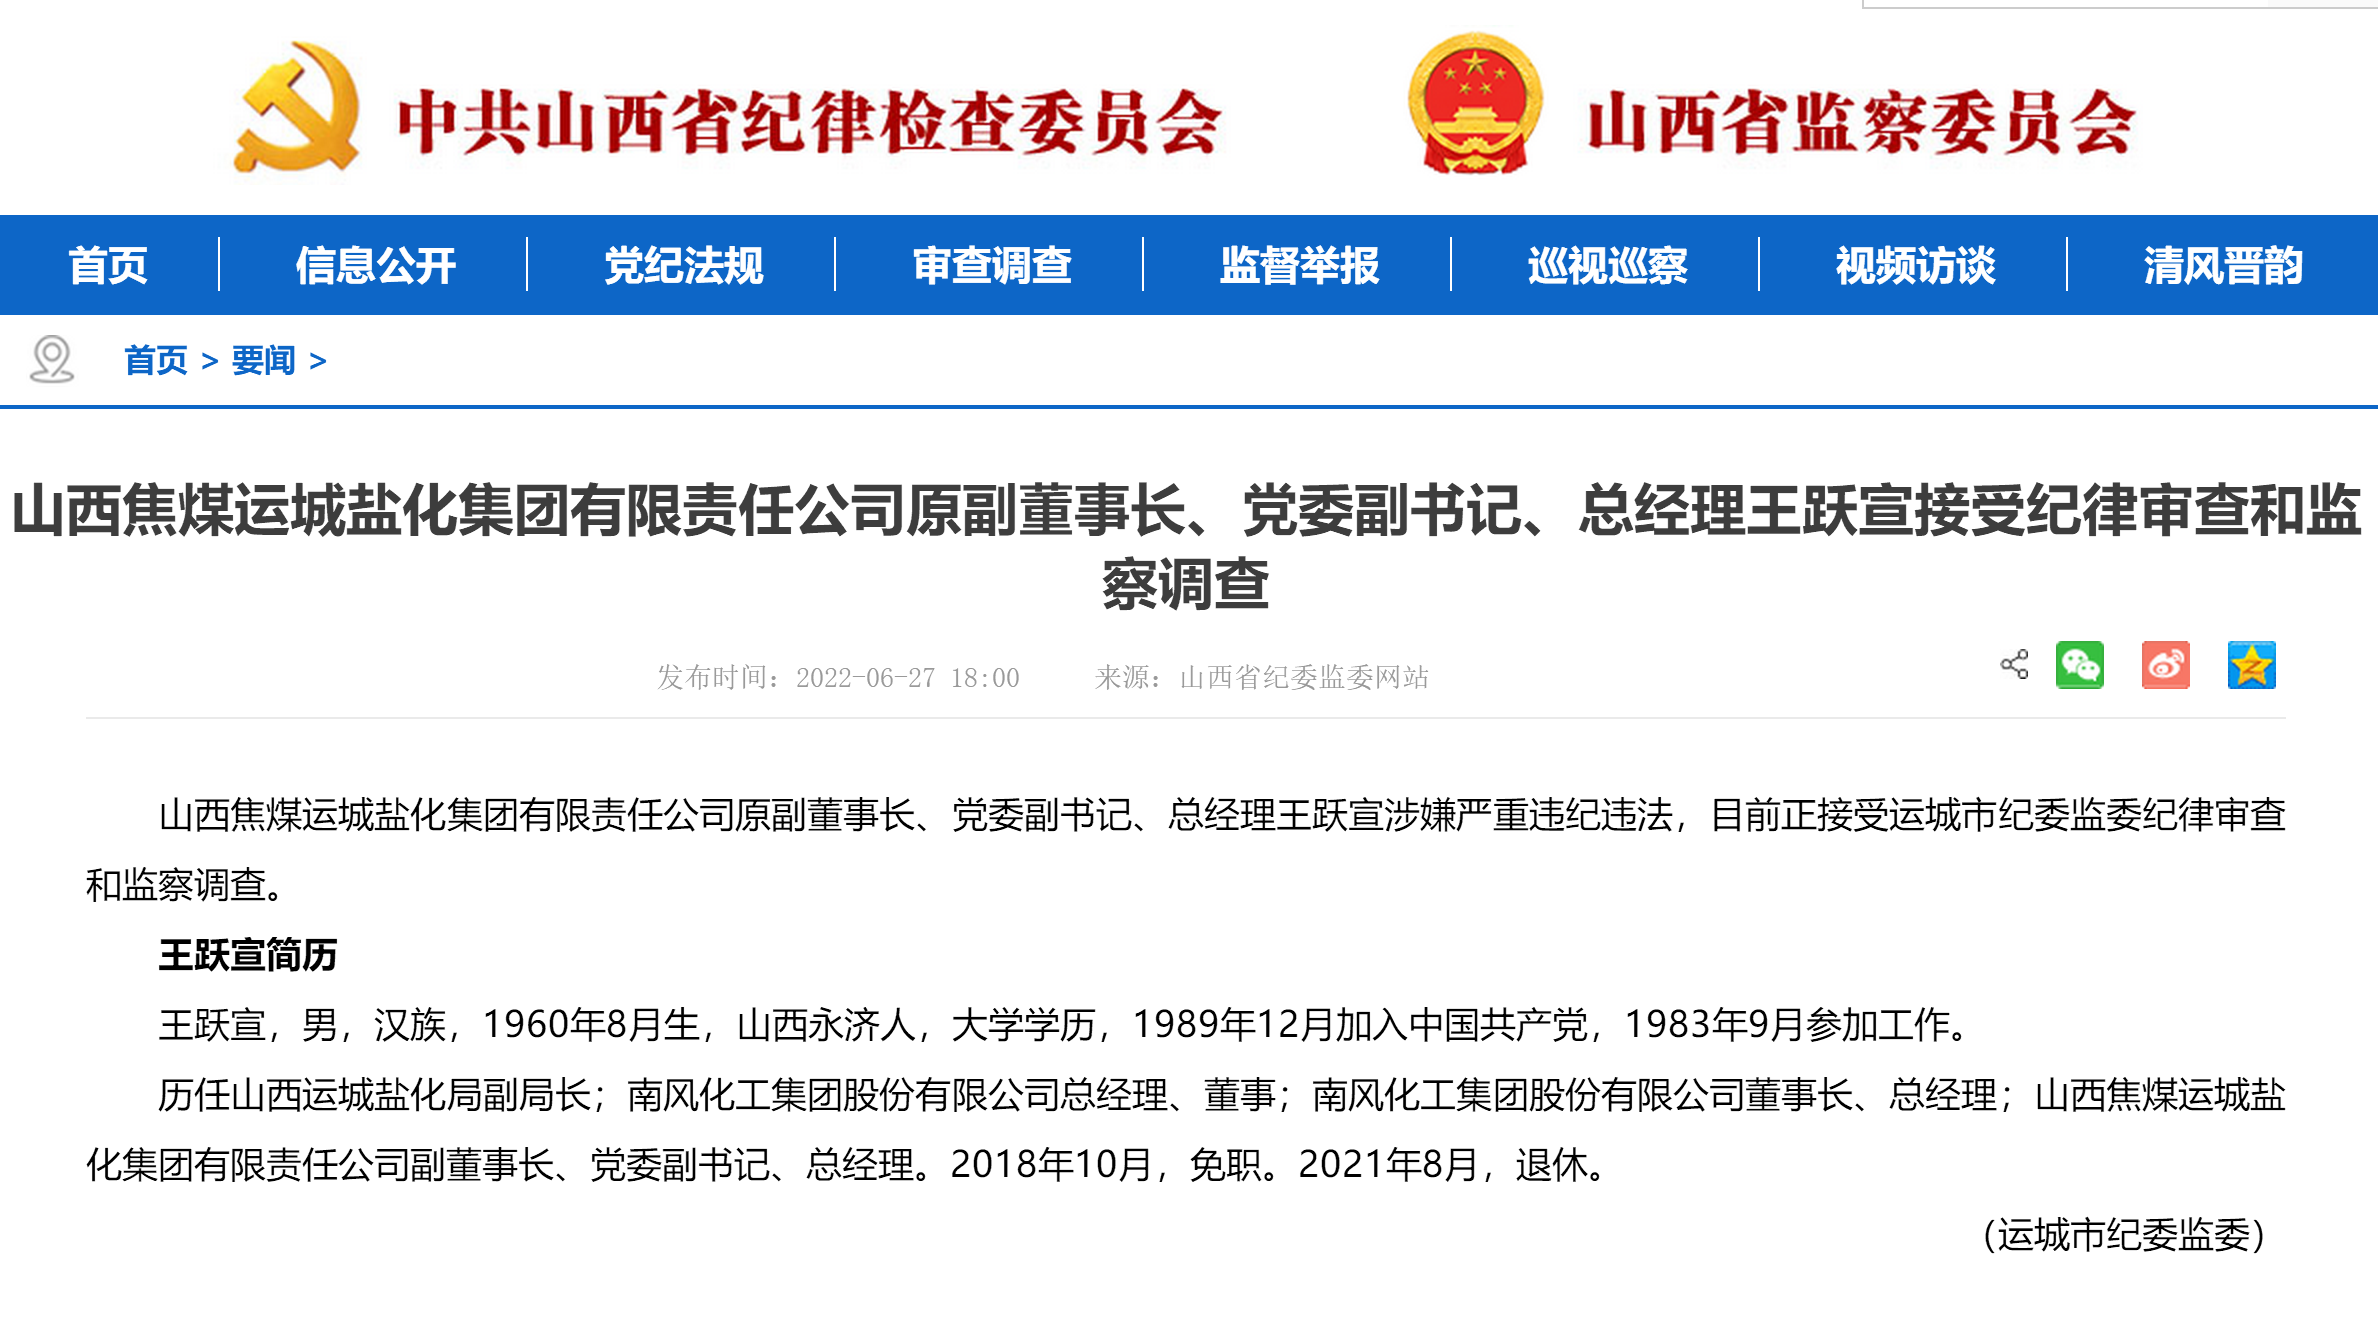 山西焦煤运城盐化集团原副董事长王跃宣接受审查调查